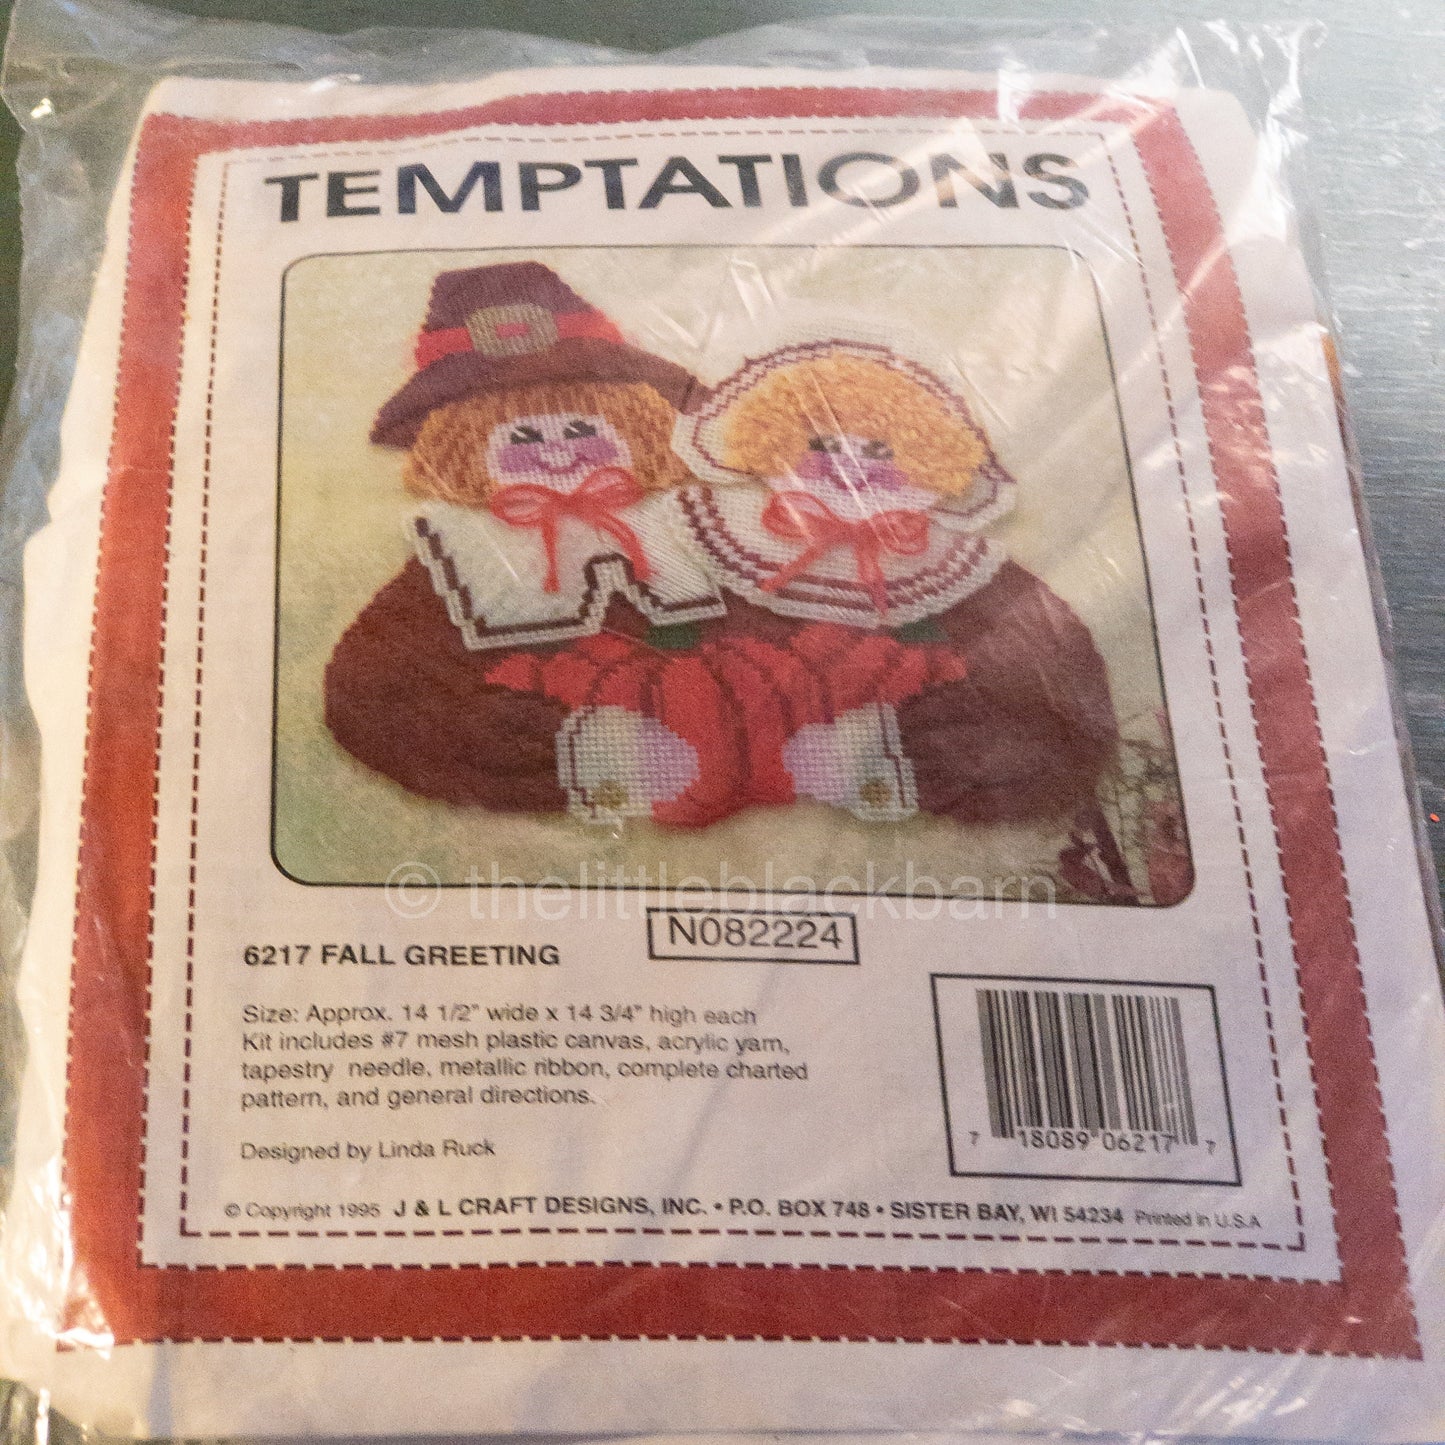 Temptations, 6217 Fall Greetings, Vintage 1995, Plastic Canvas Kit*